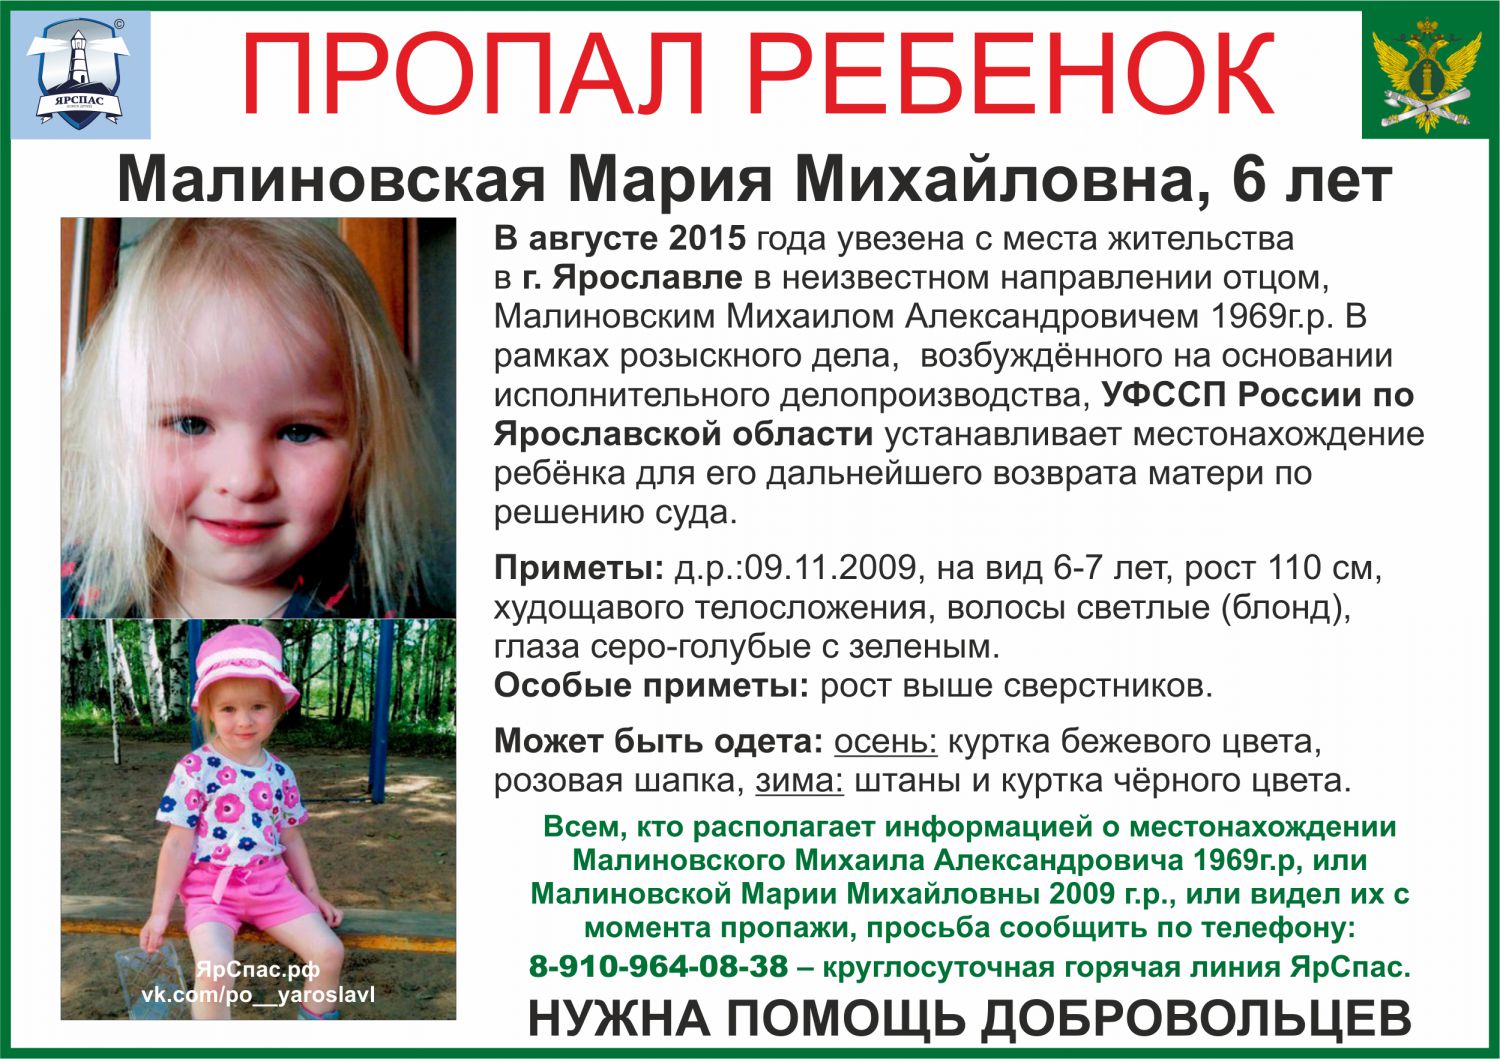 Пропажи детей в России